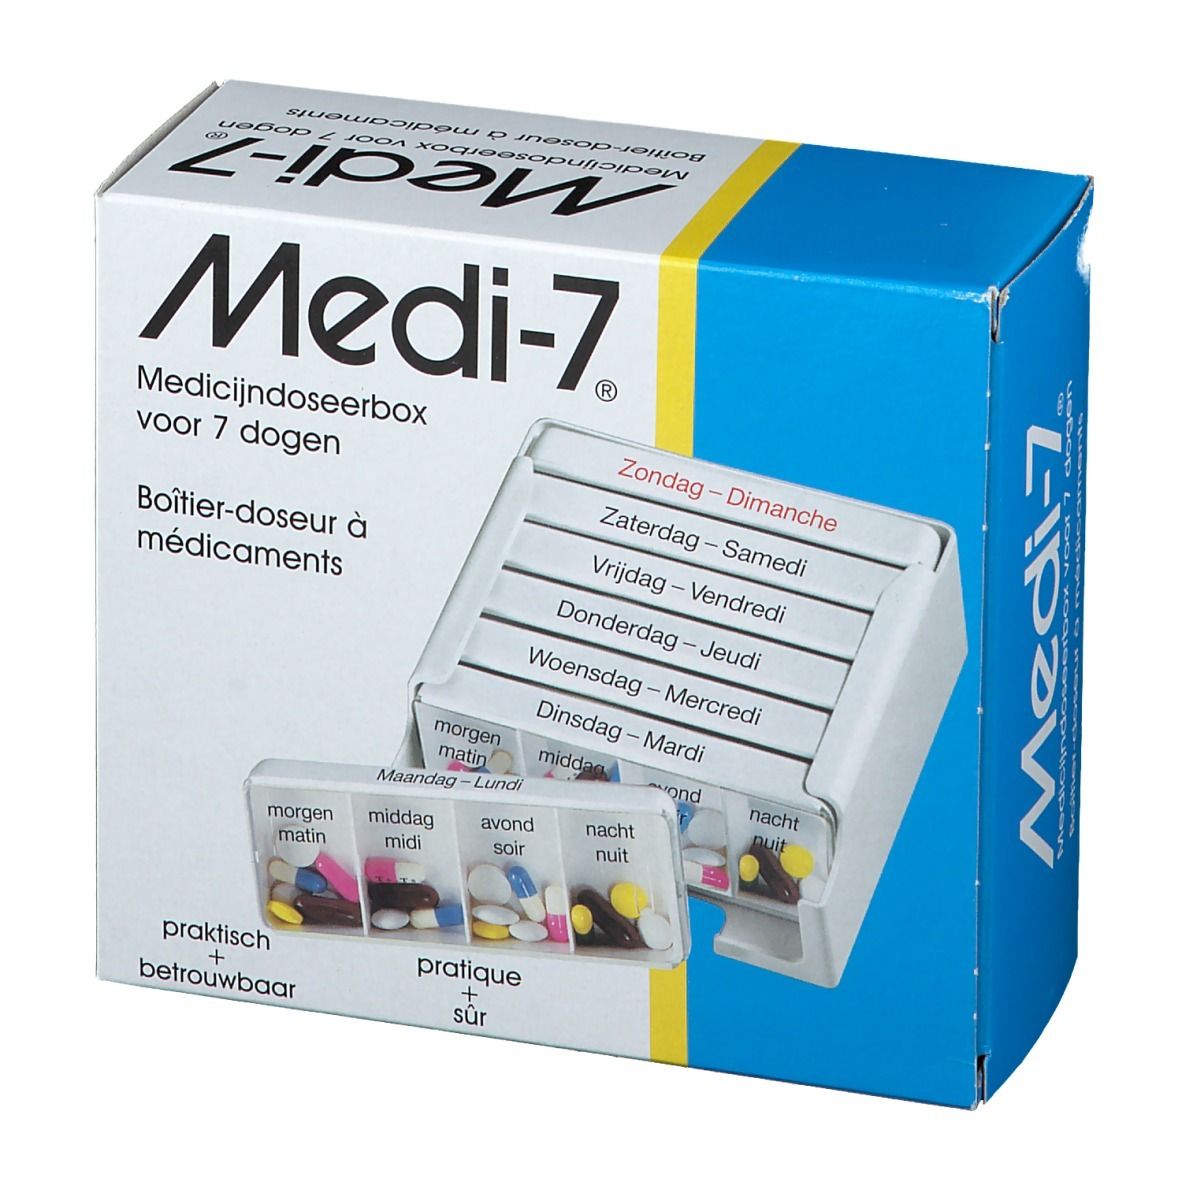 Medi-7 Pilullier Semaine